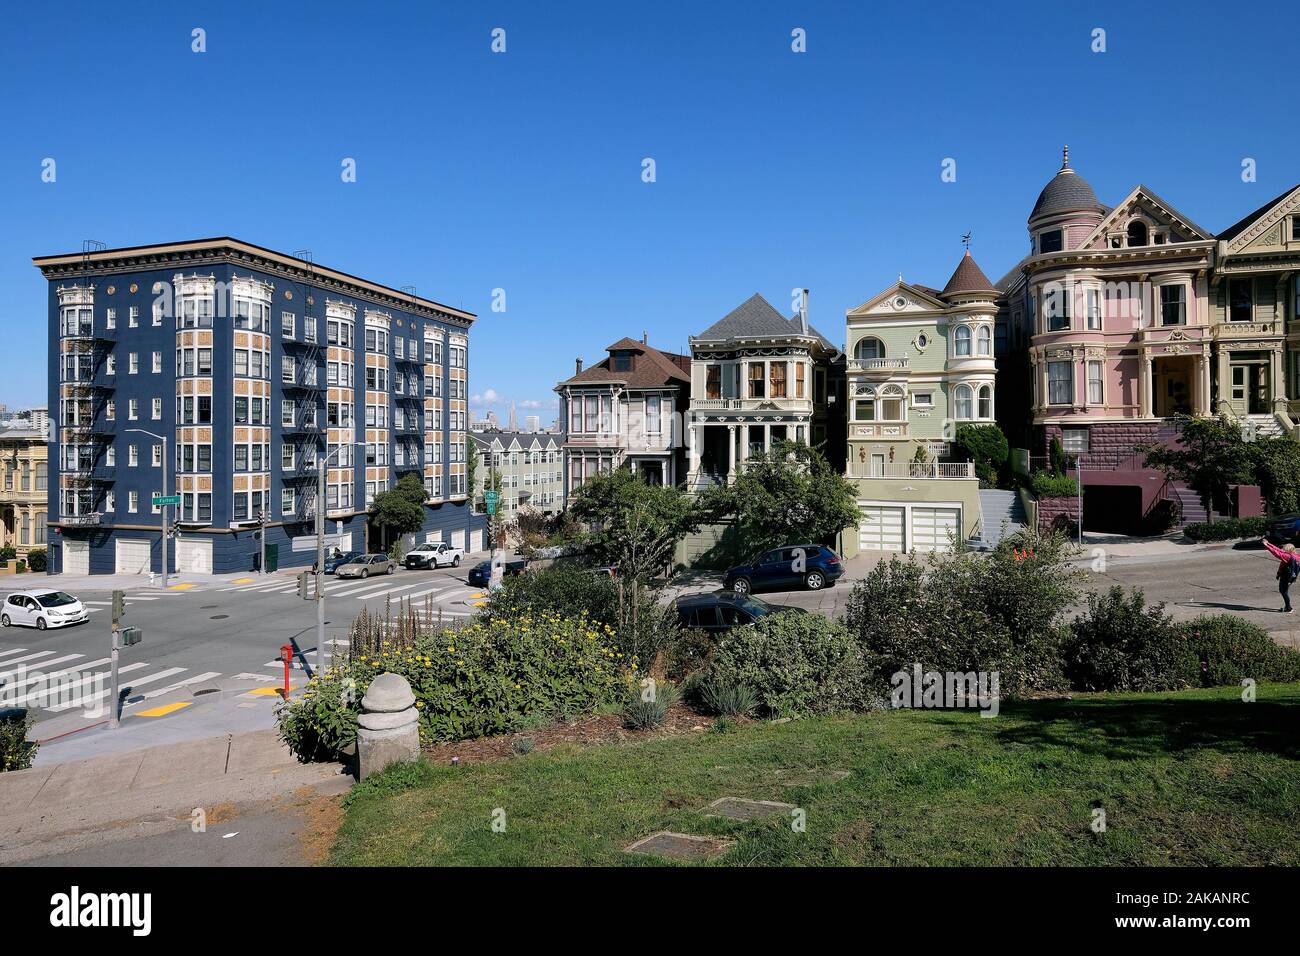 Case vittoriane in corrispondenza dell'intersezione di Steiner e Fulton Street su Alamo Square, San Francisco, California, Stati Uniti d'America Foto Stock